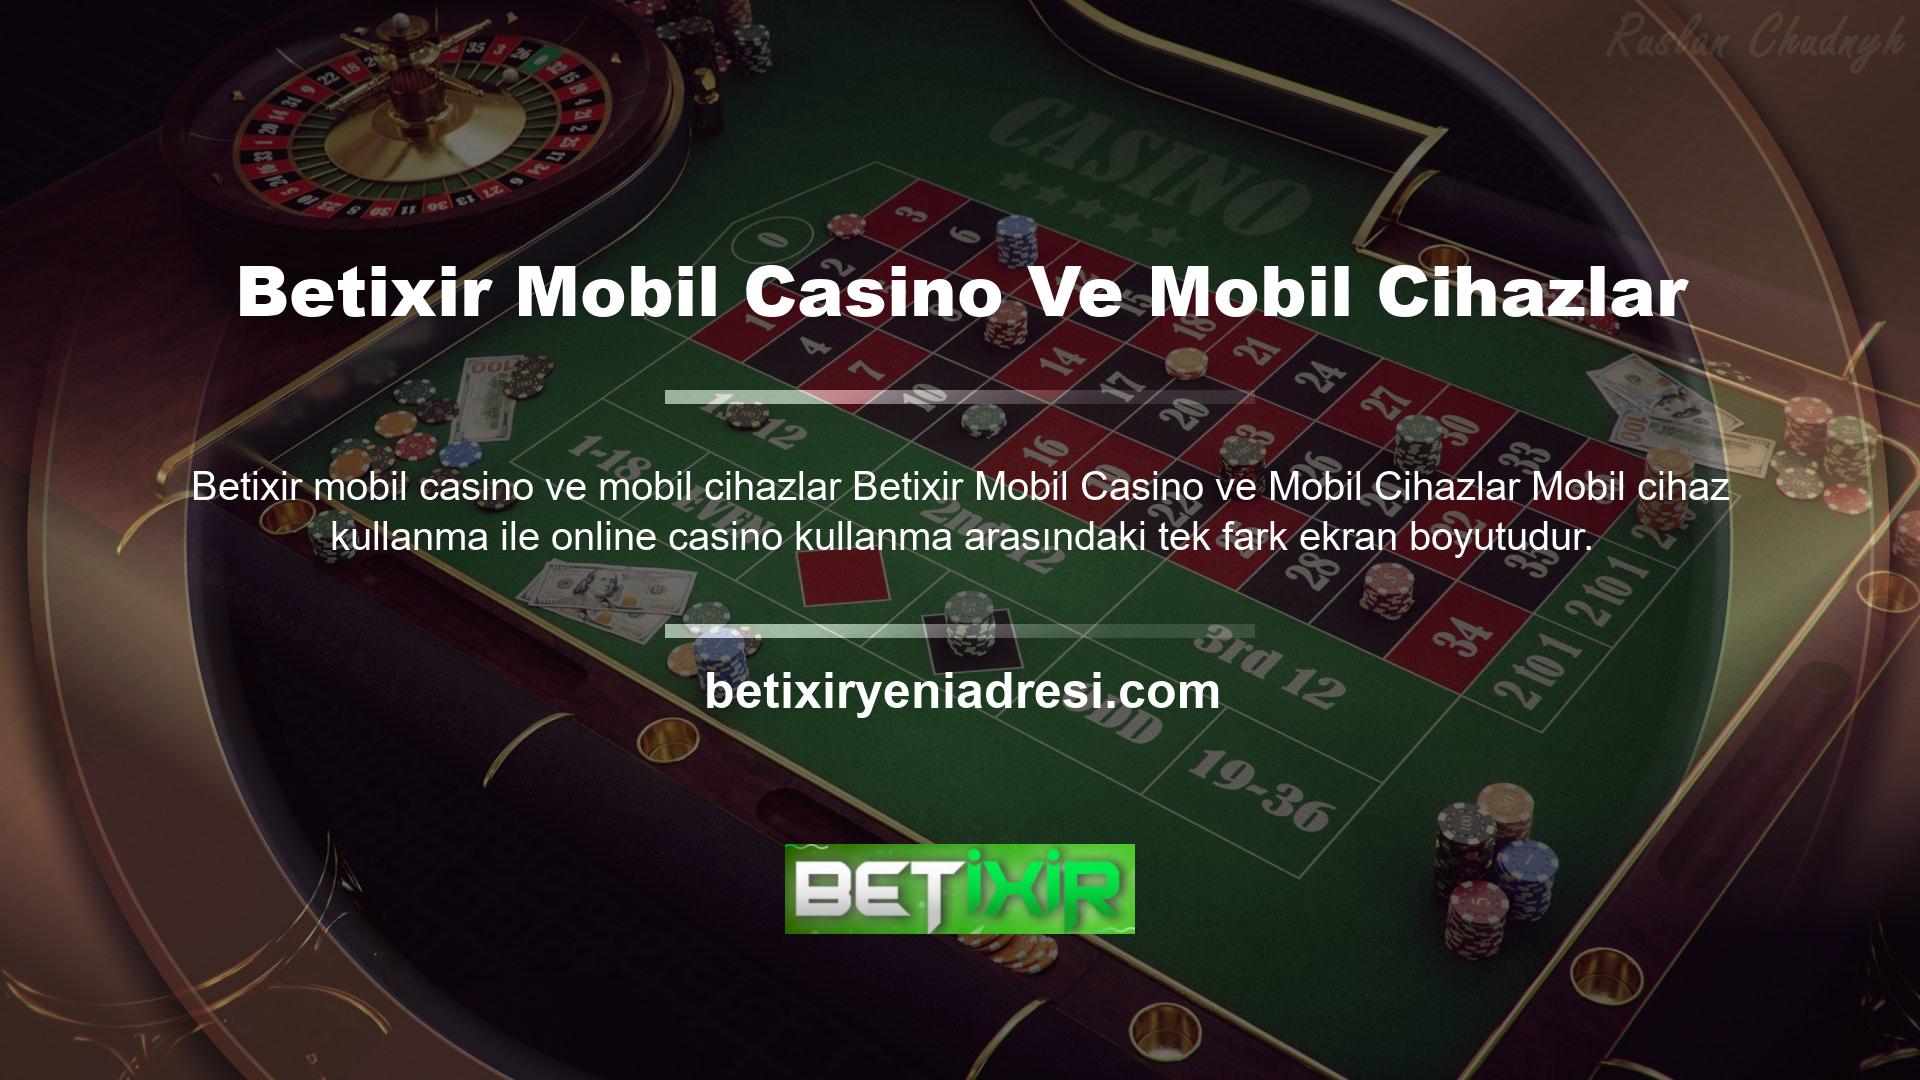 Mobil casino teknolojisi, aynı heyecan verici oyunları ve premium özellikleri sunar